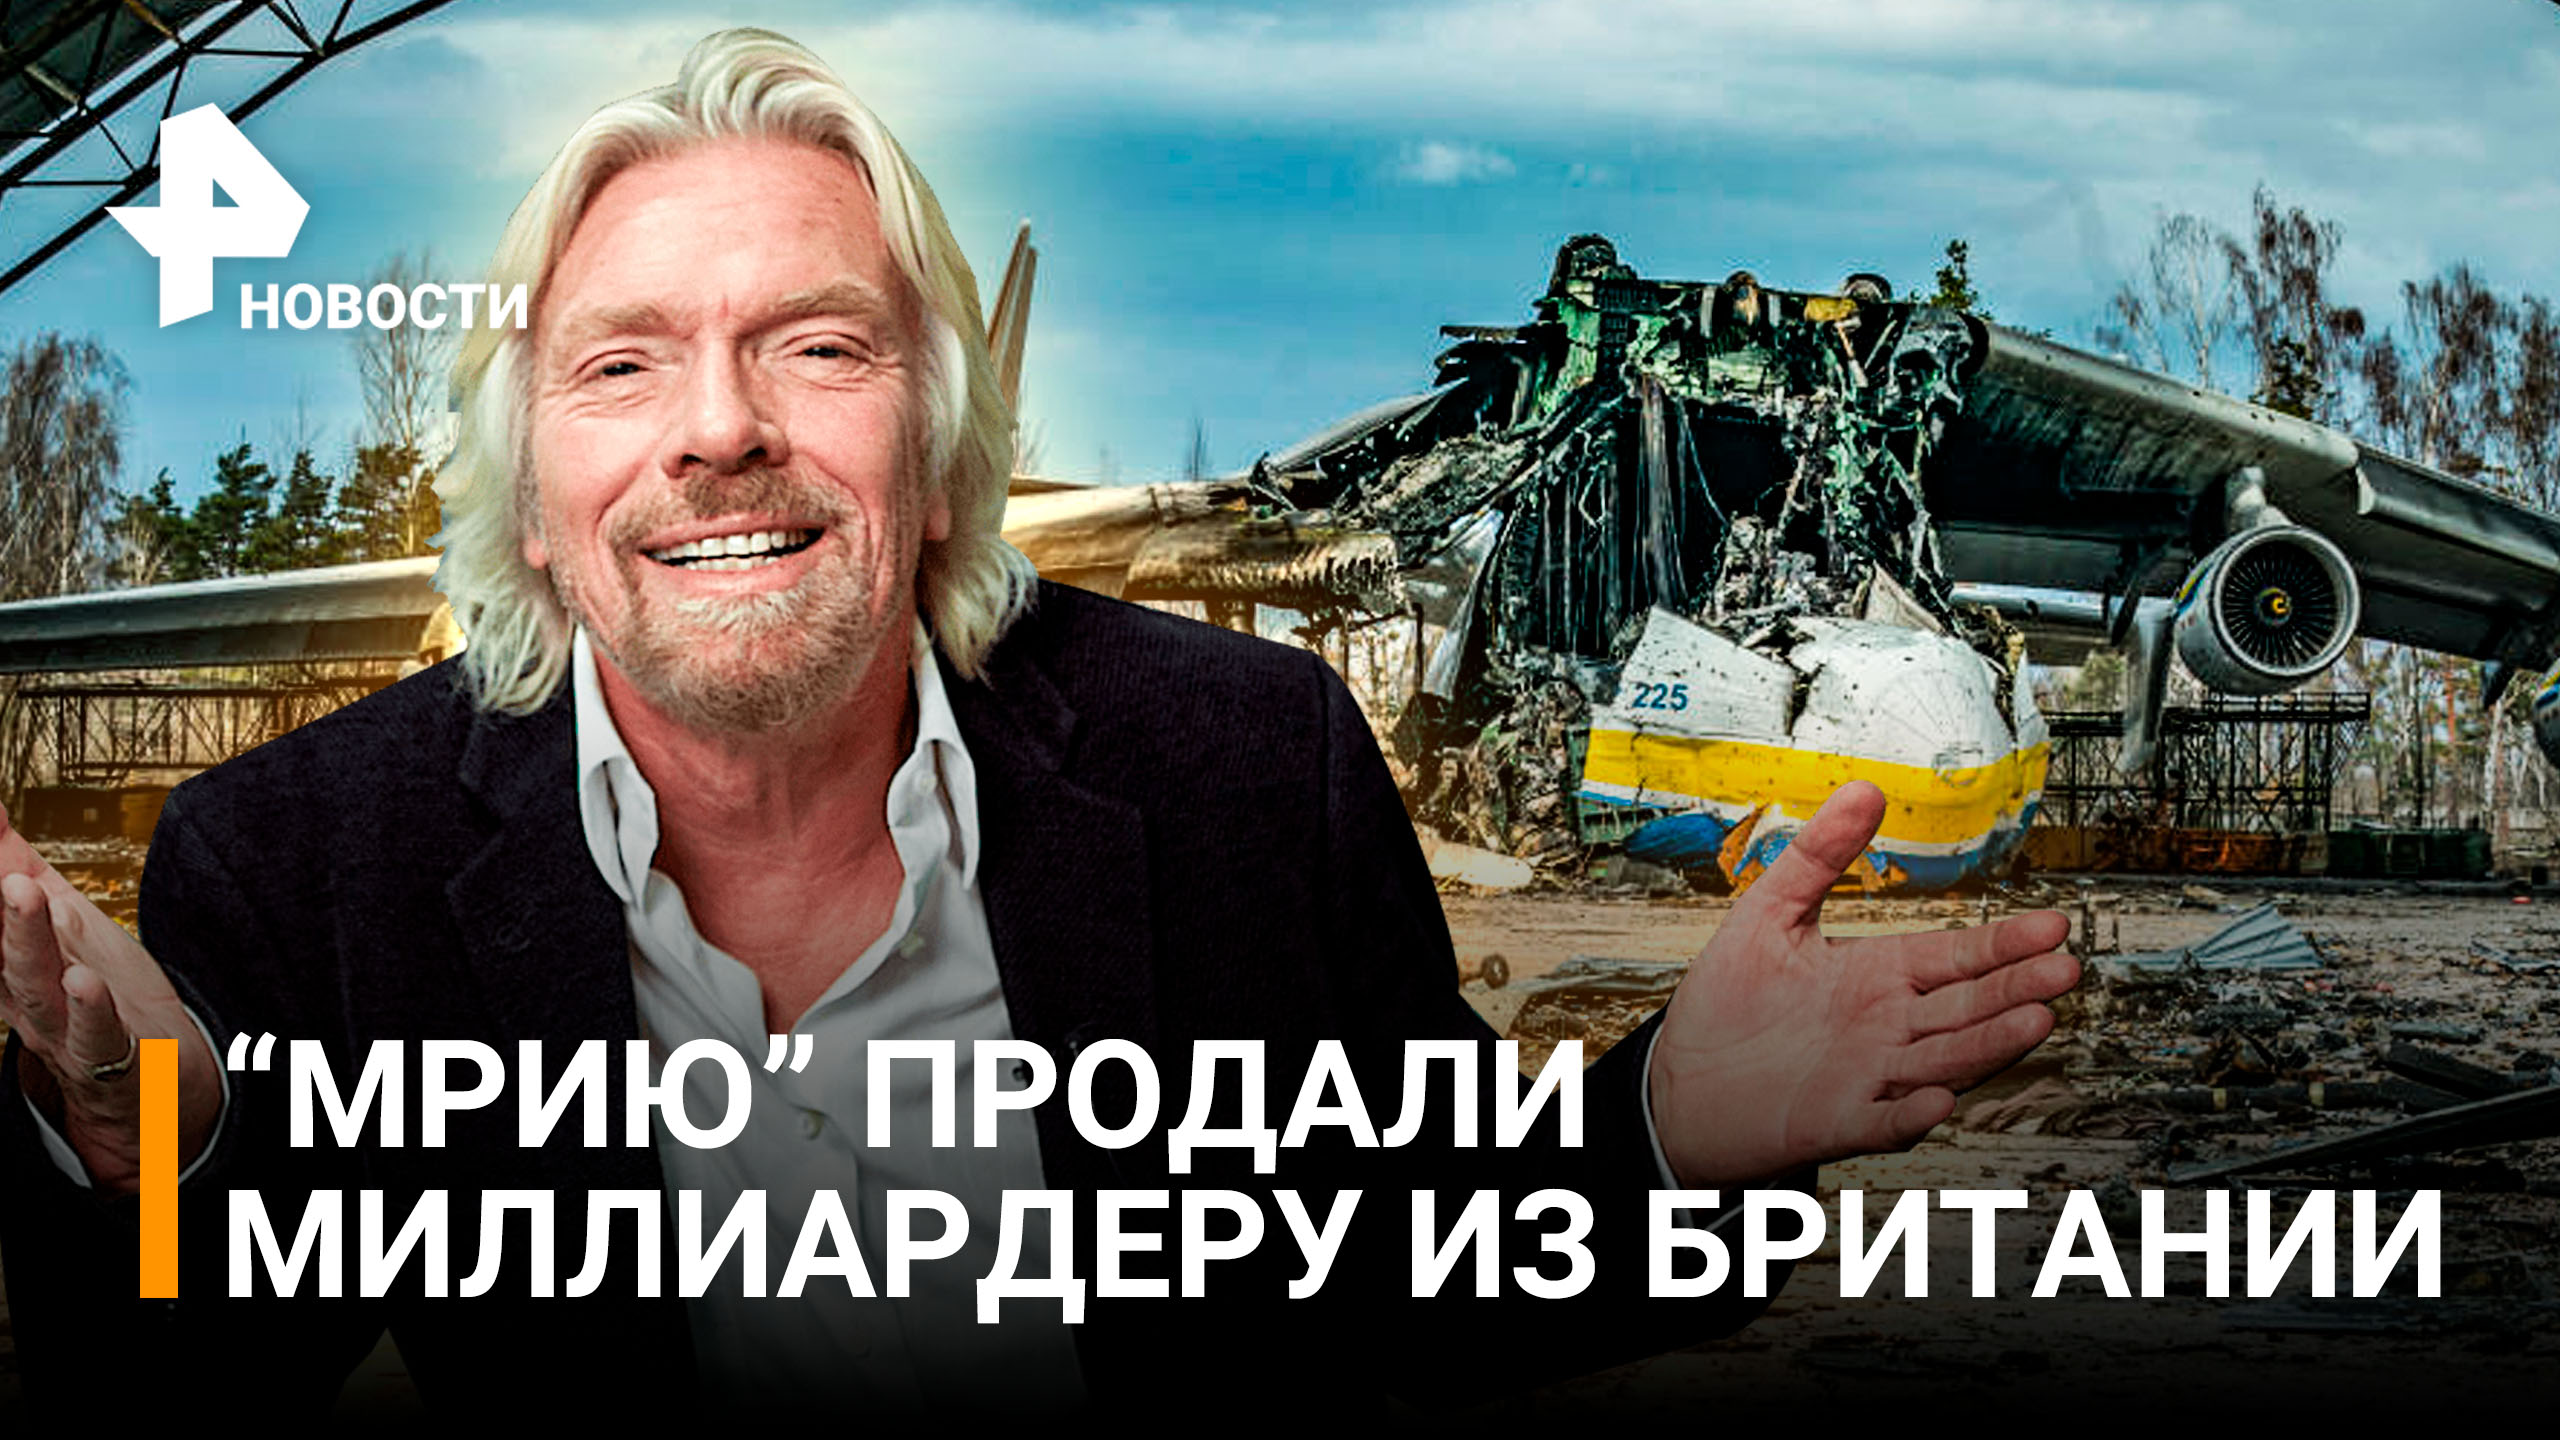 Зачем миллиардеру Брэнсону украинская "Мрия" и смогут ли восстановить легендарный АН-225?